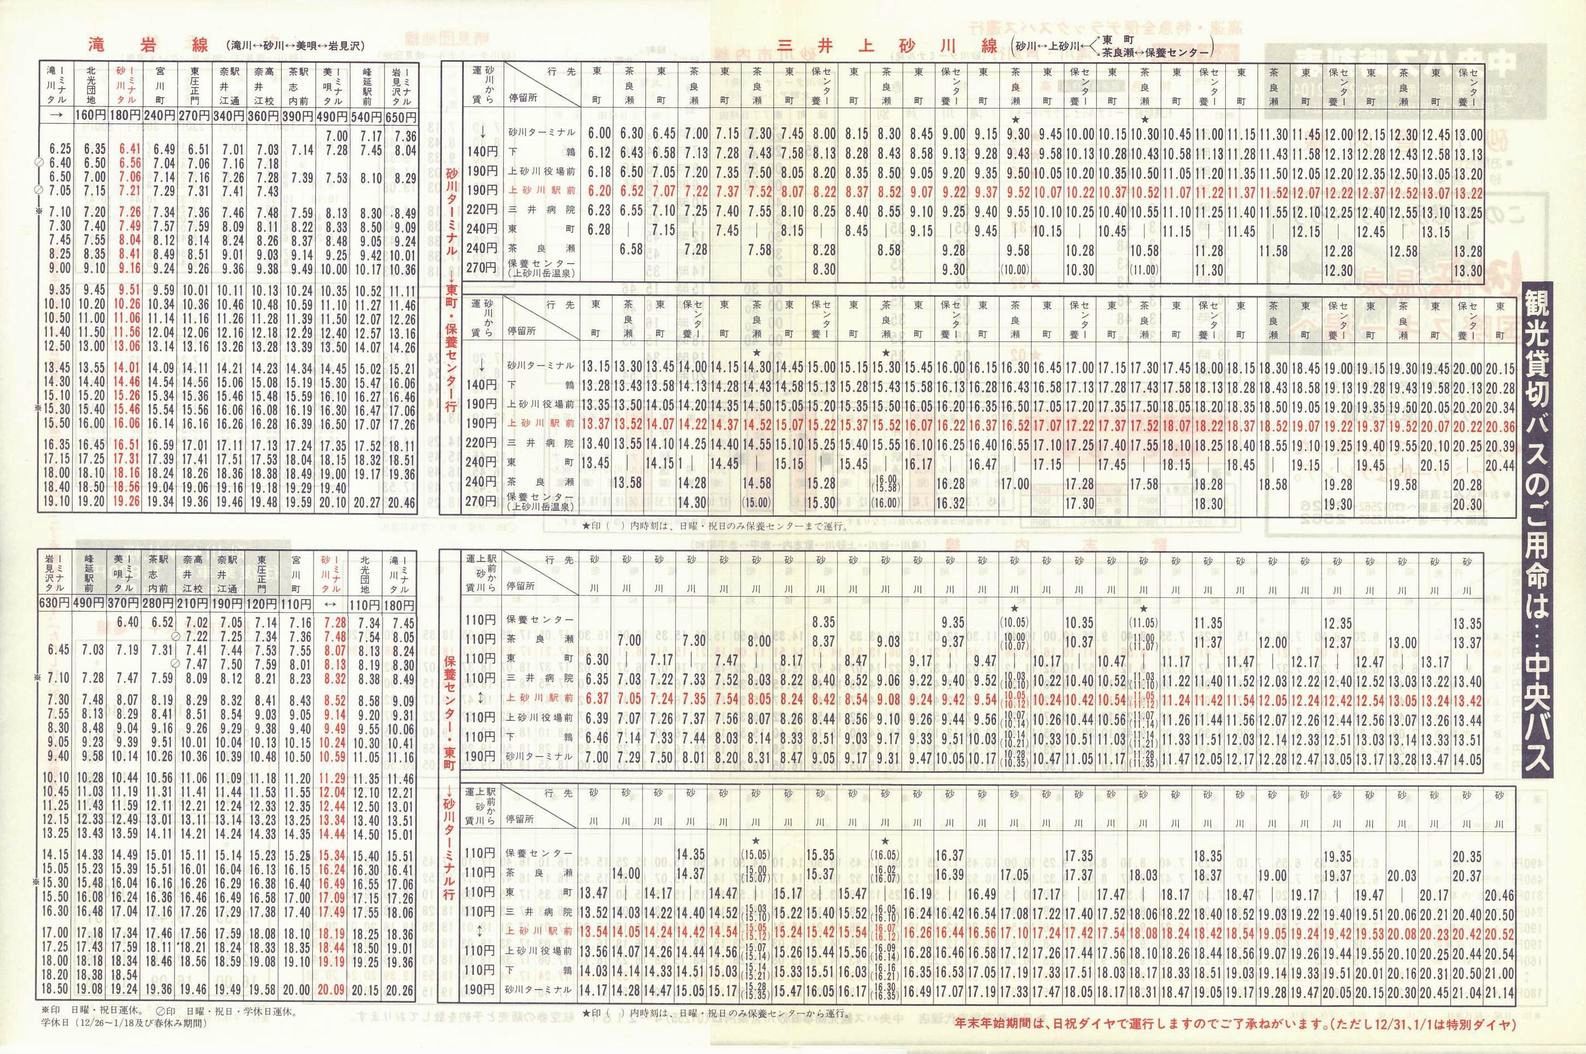 1987-12-01改正_北海道中央バス(空知)_砂川管内線時刻表裏面